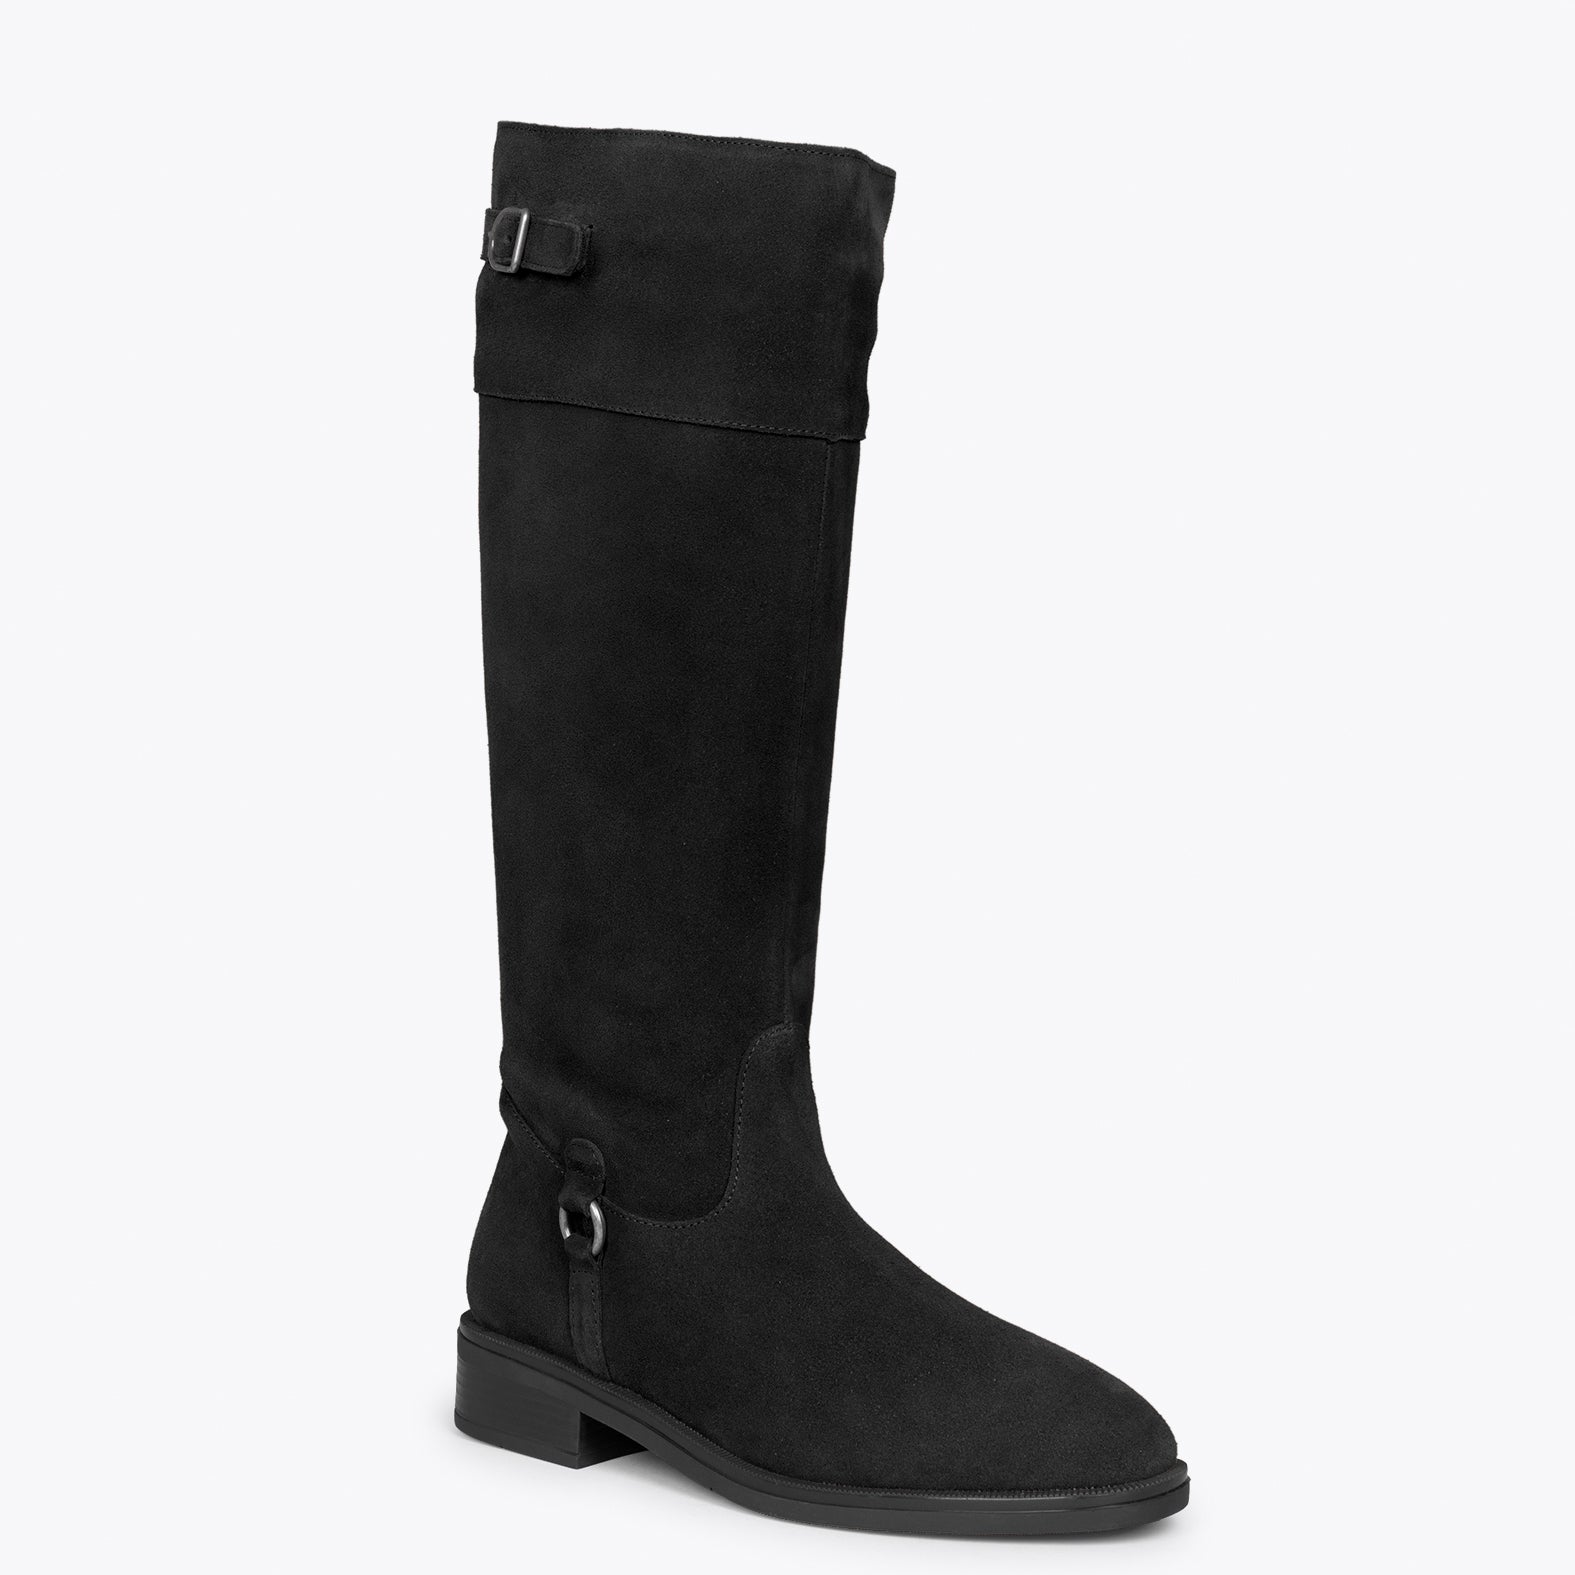 VIRGINIA – BLACK low heel boot